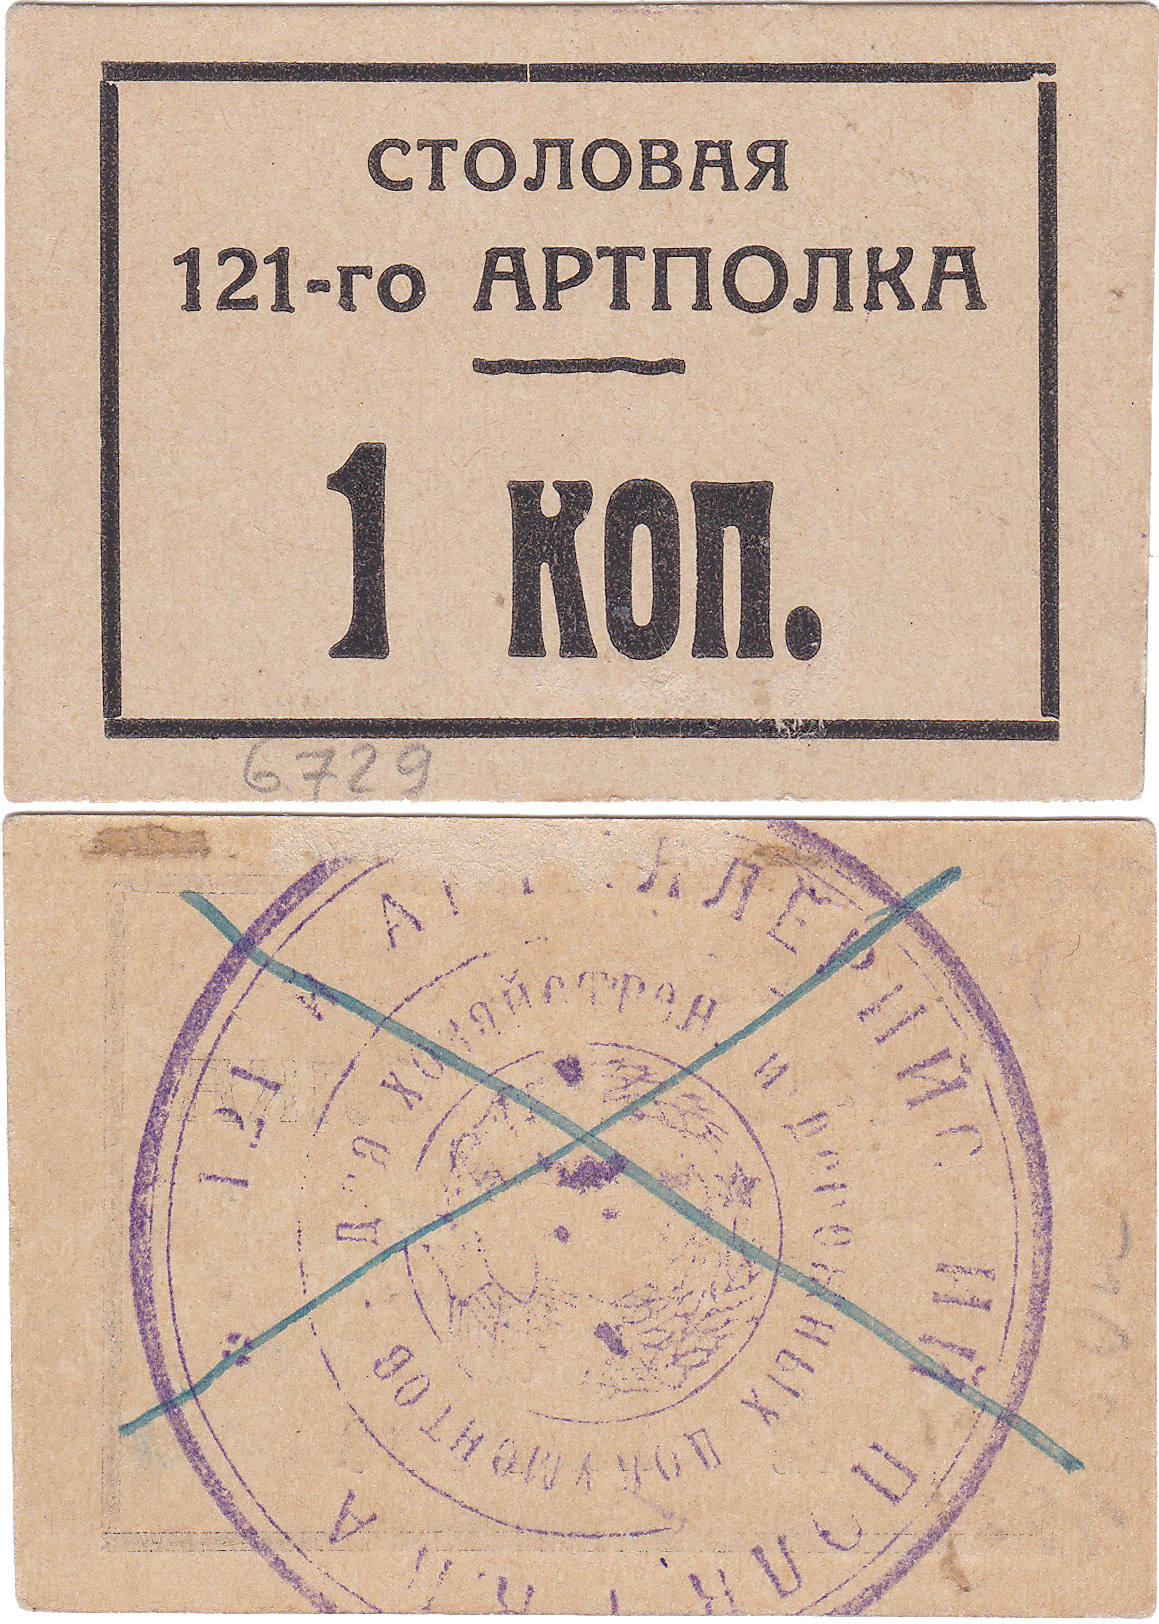 1 Копейка 1927 год. Столовая 121-го Артполка. Севастополь